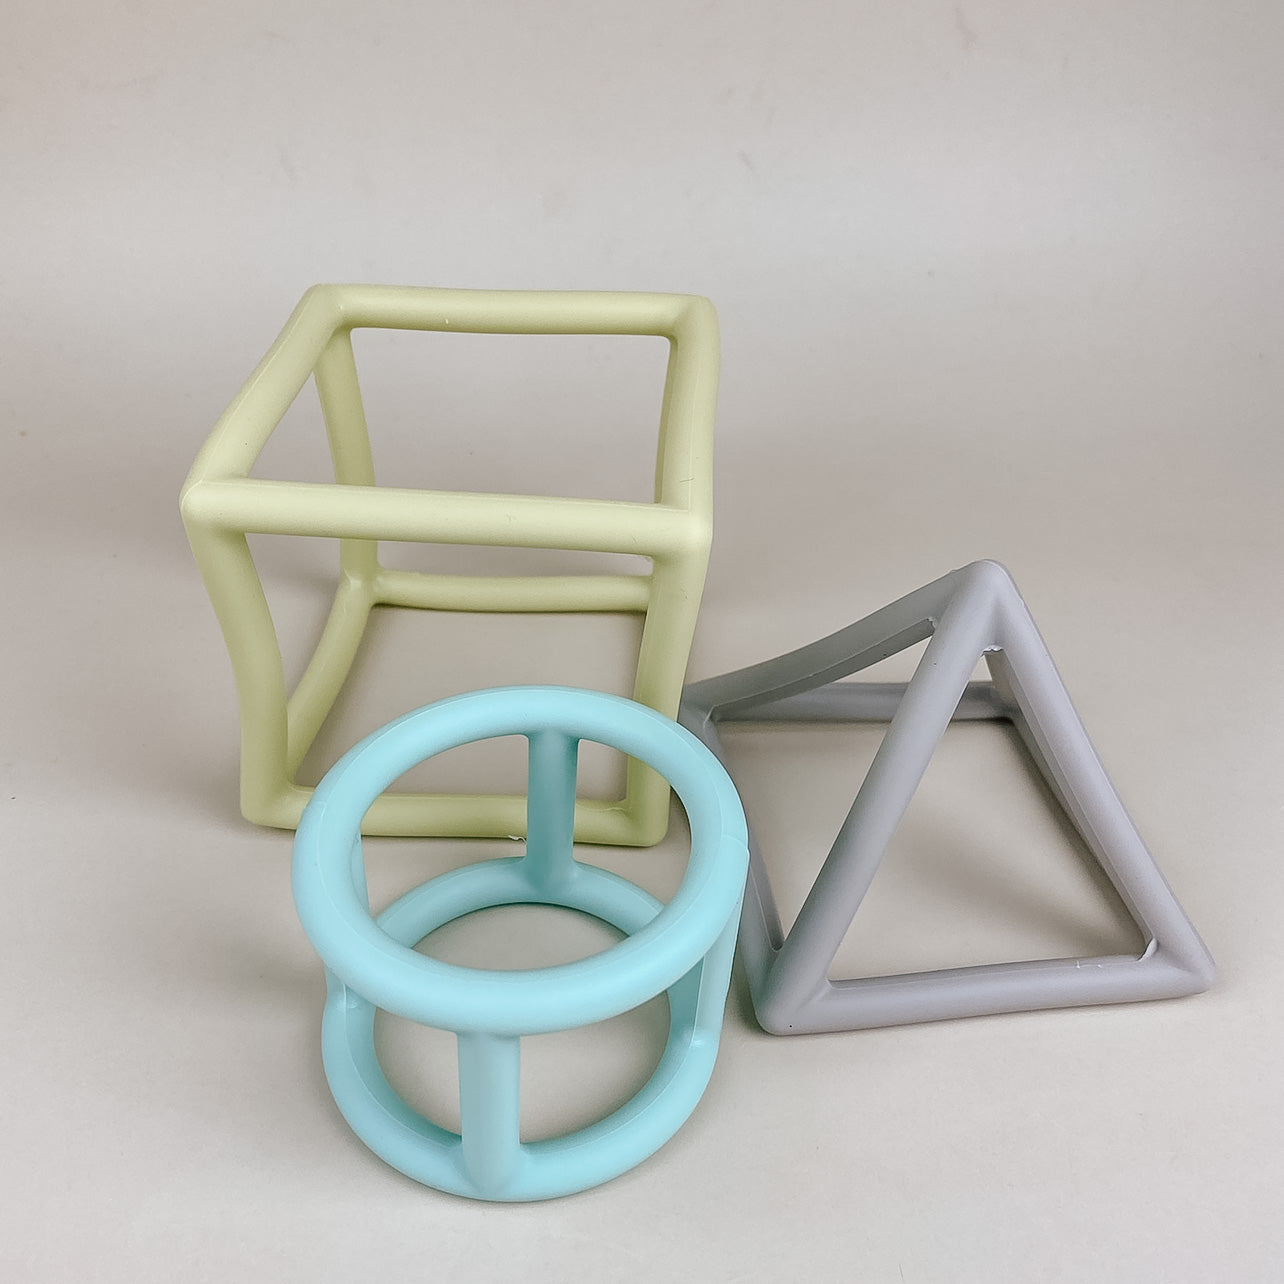 3-in-1 Geometric Toy & Teether